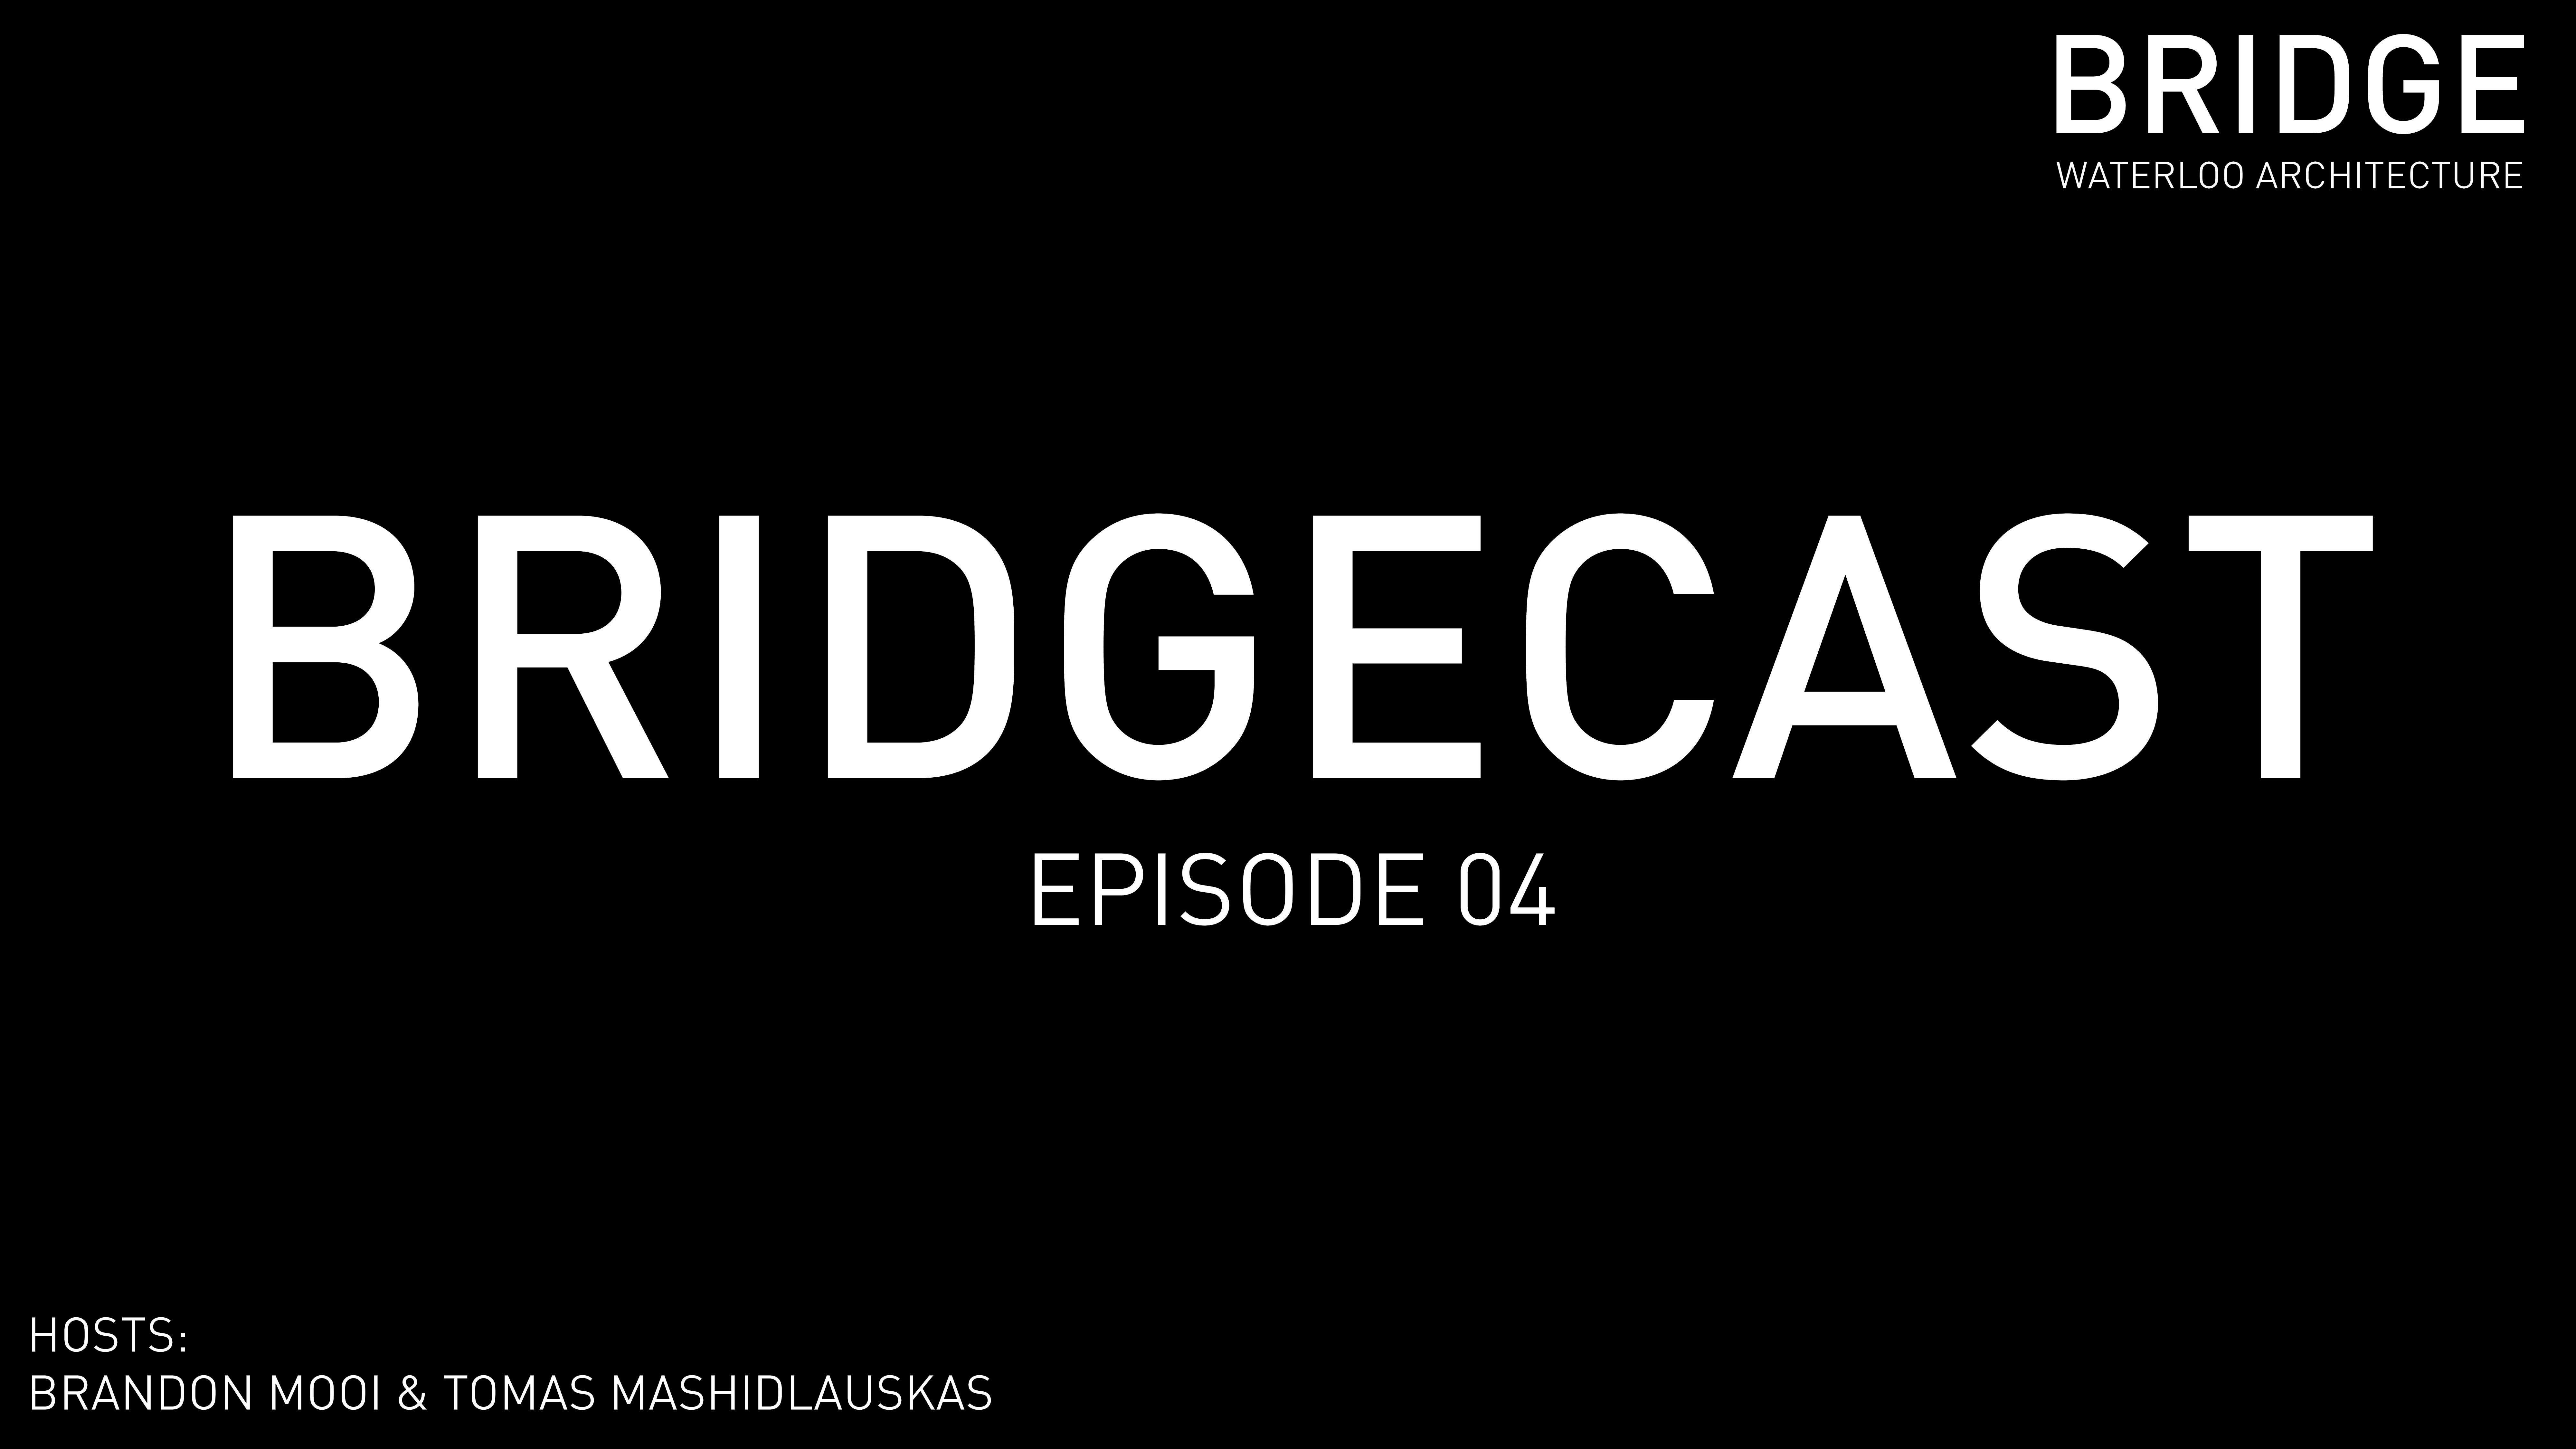 BRIDGECAST Episode 4